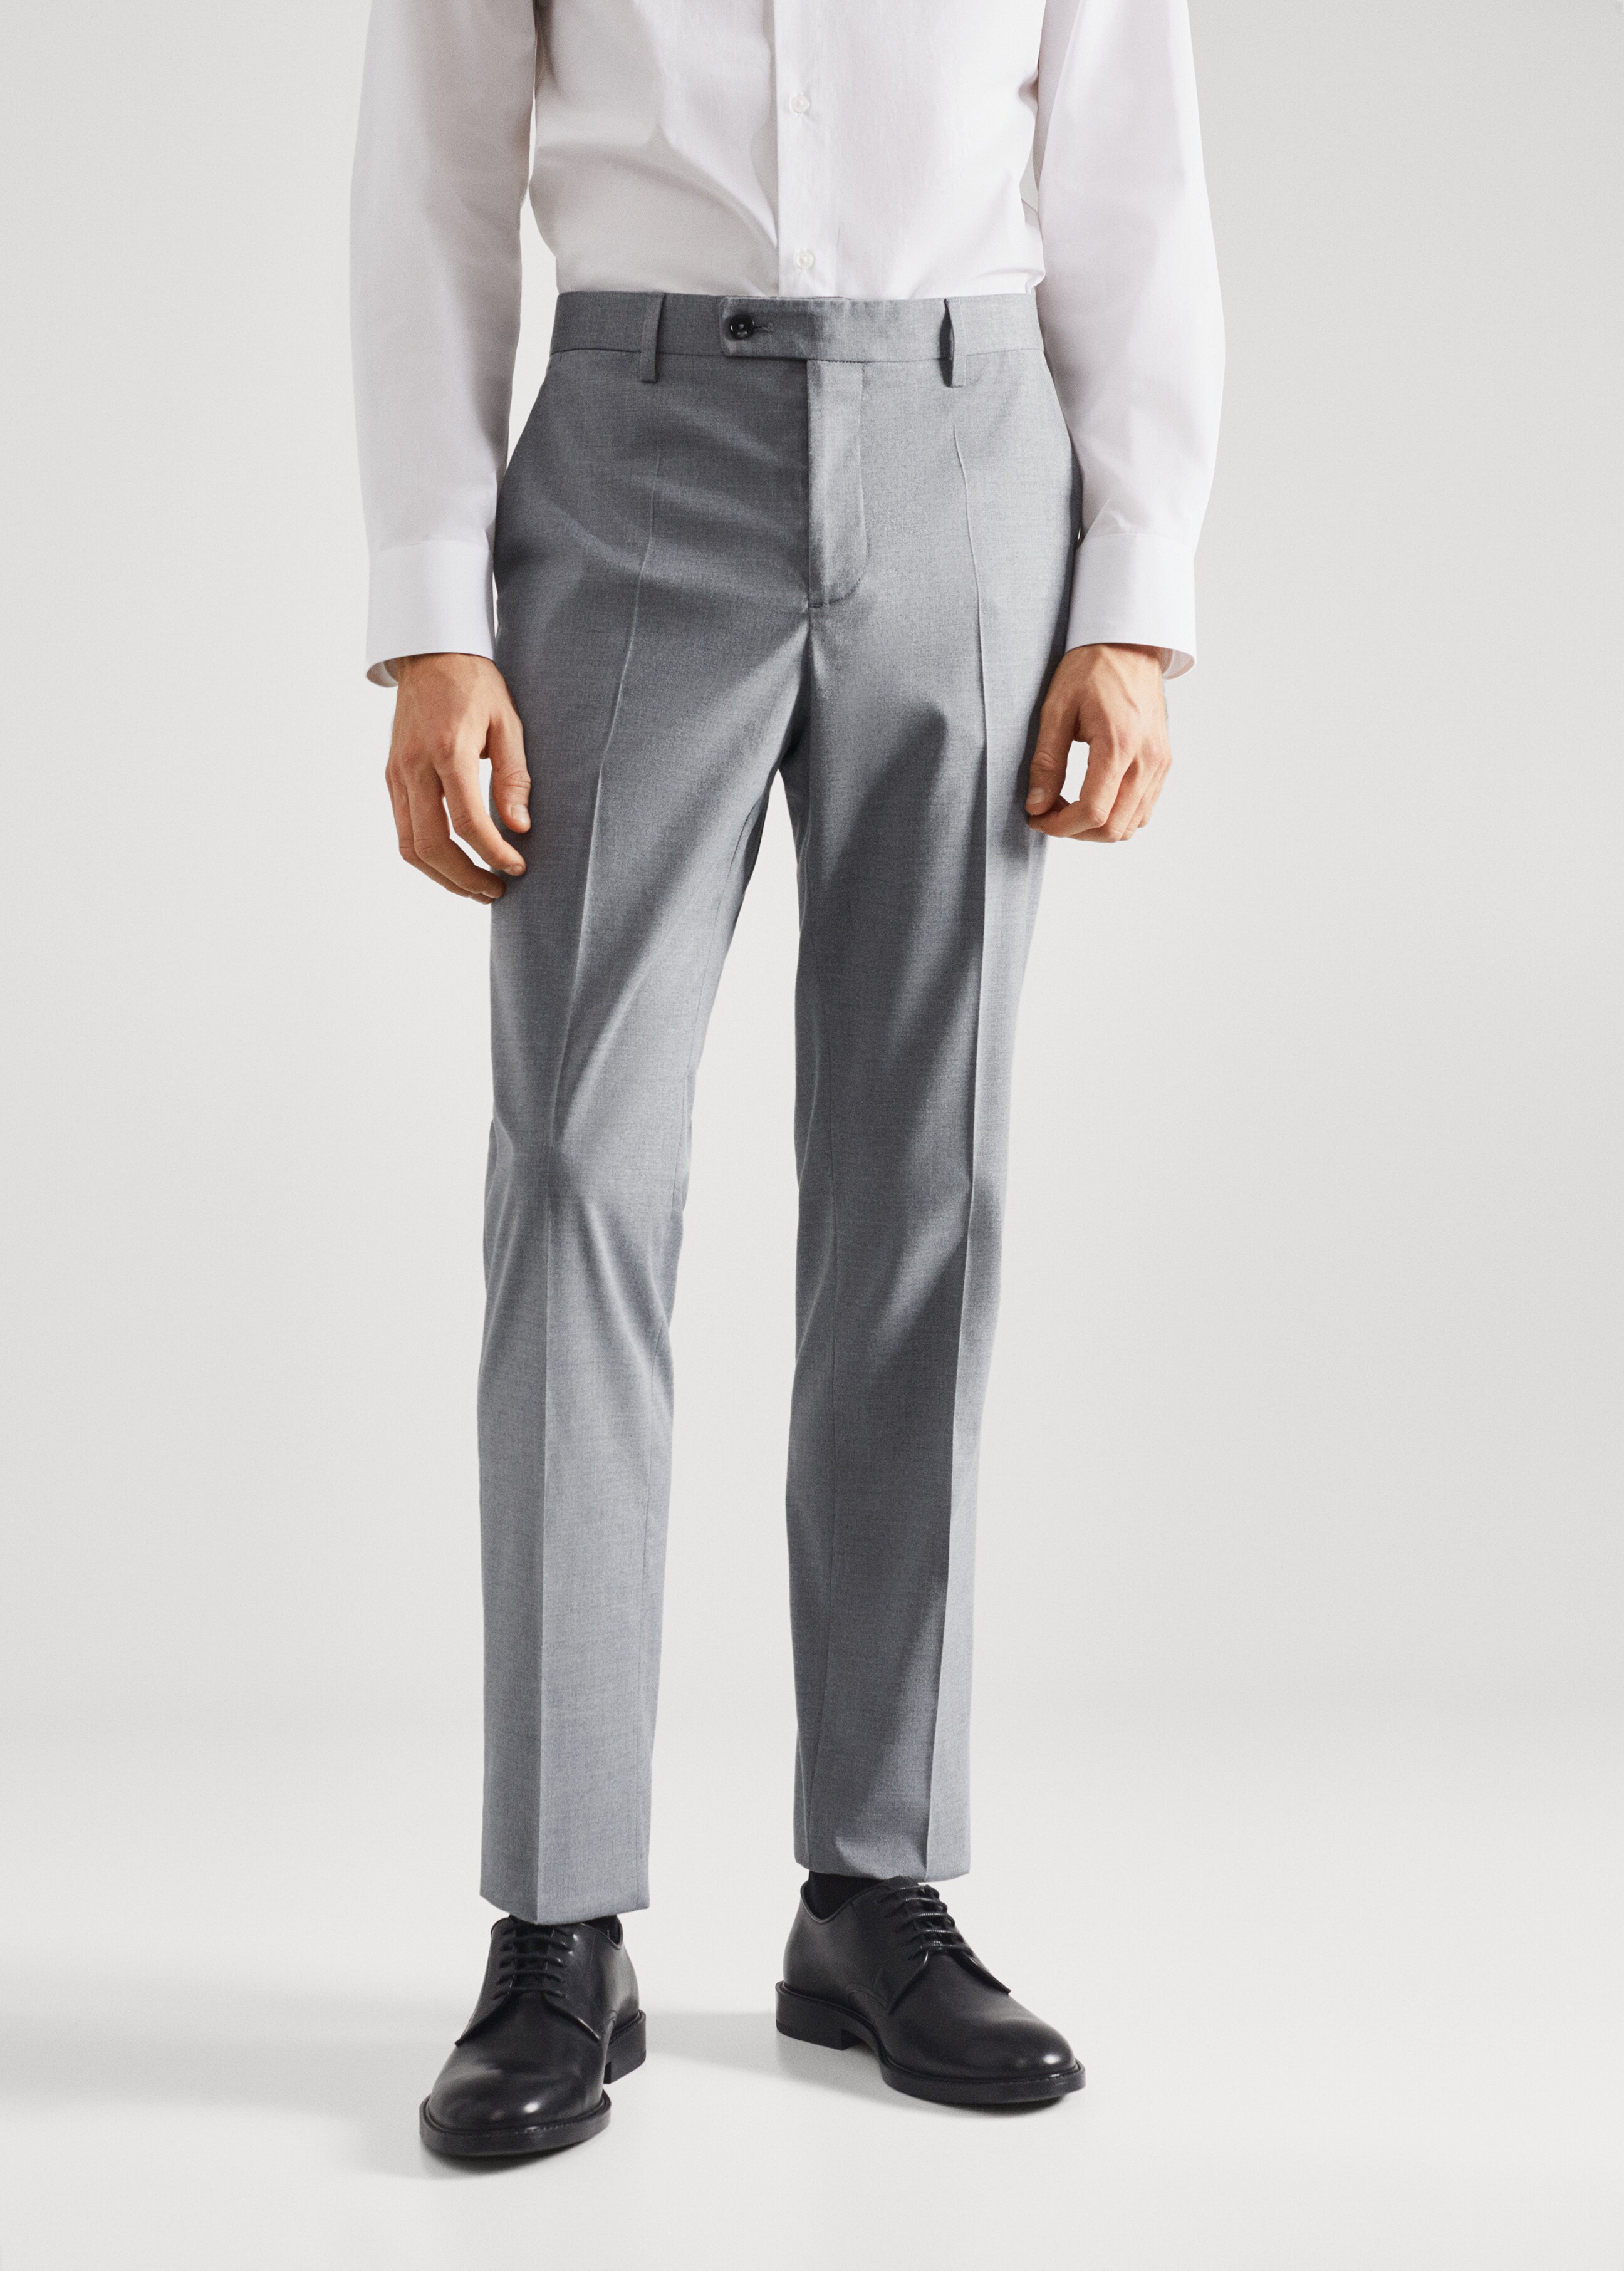 Pantalón traje slim fit cuadros - Plano medio